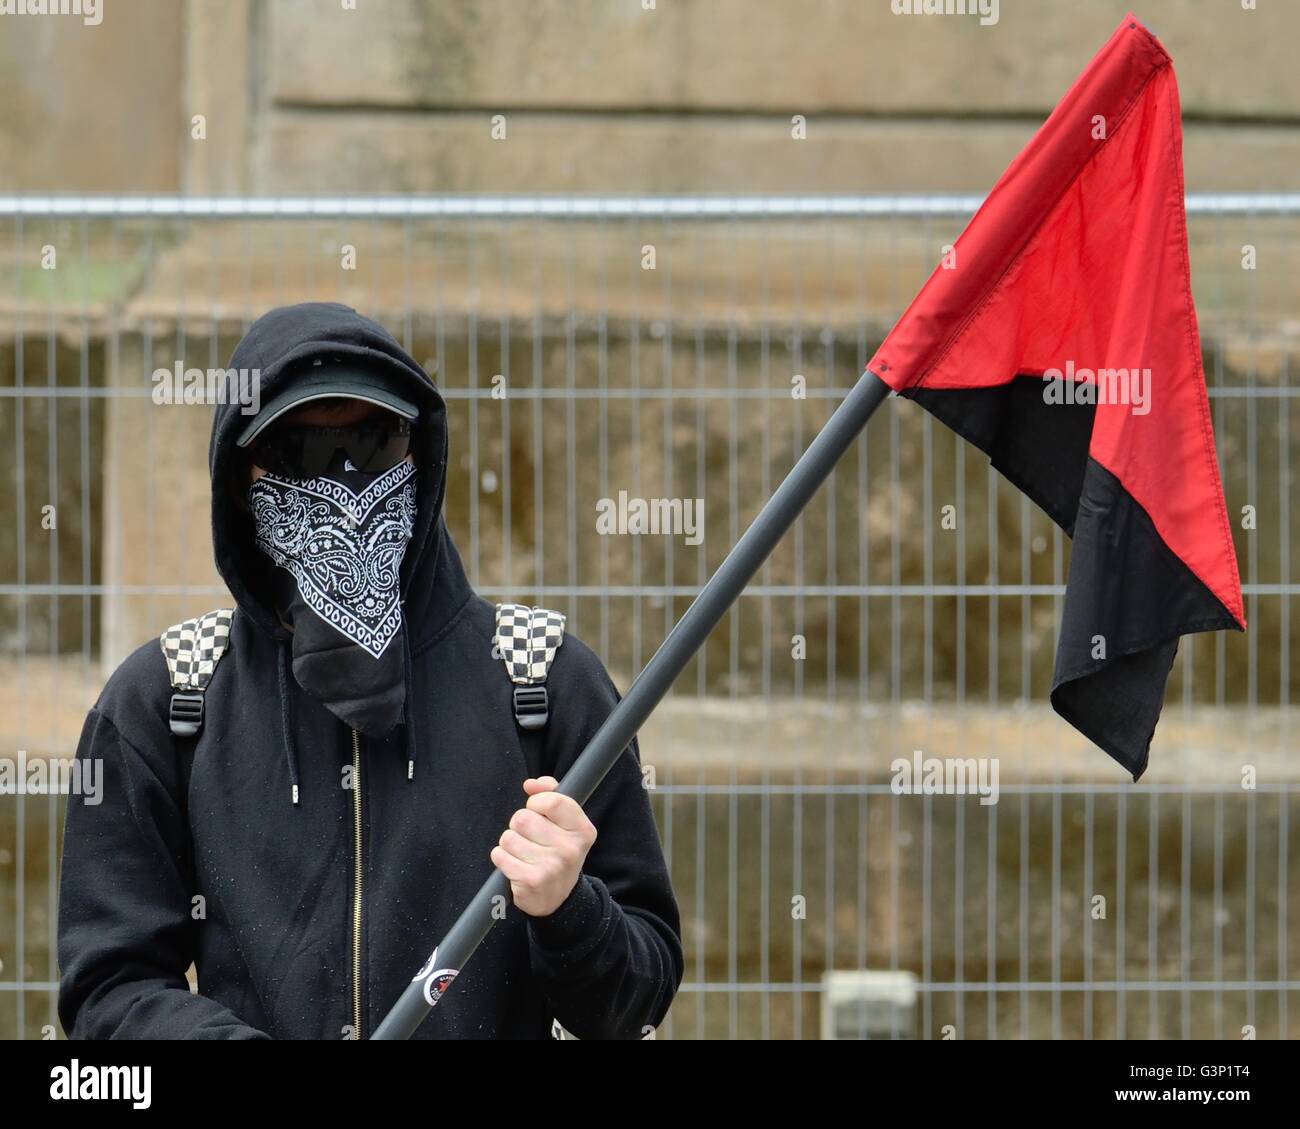 Ein Jugendlicher mit seinem Gesicht bedeckt halten eine diagonal halbierten roten und schwarzen Fahne der anarchistischen Bewegung. Stockfoto